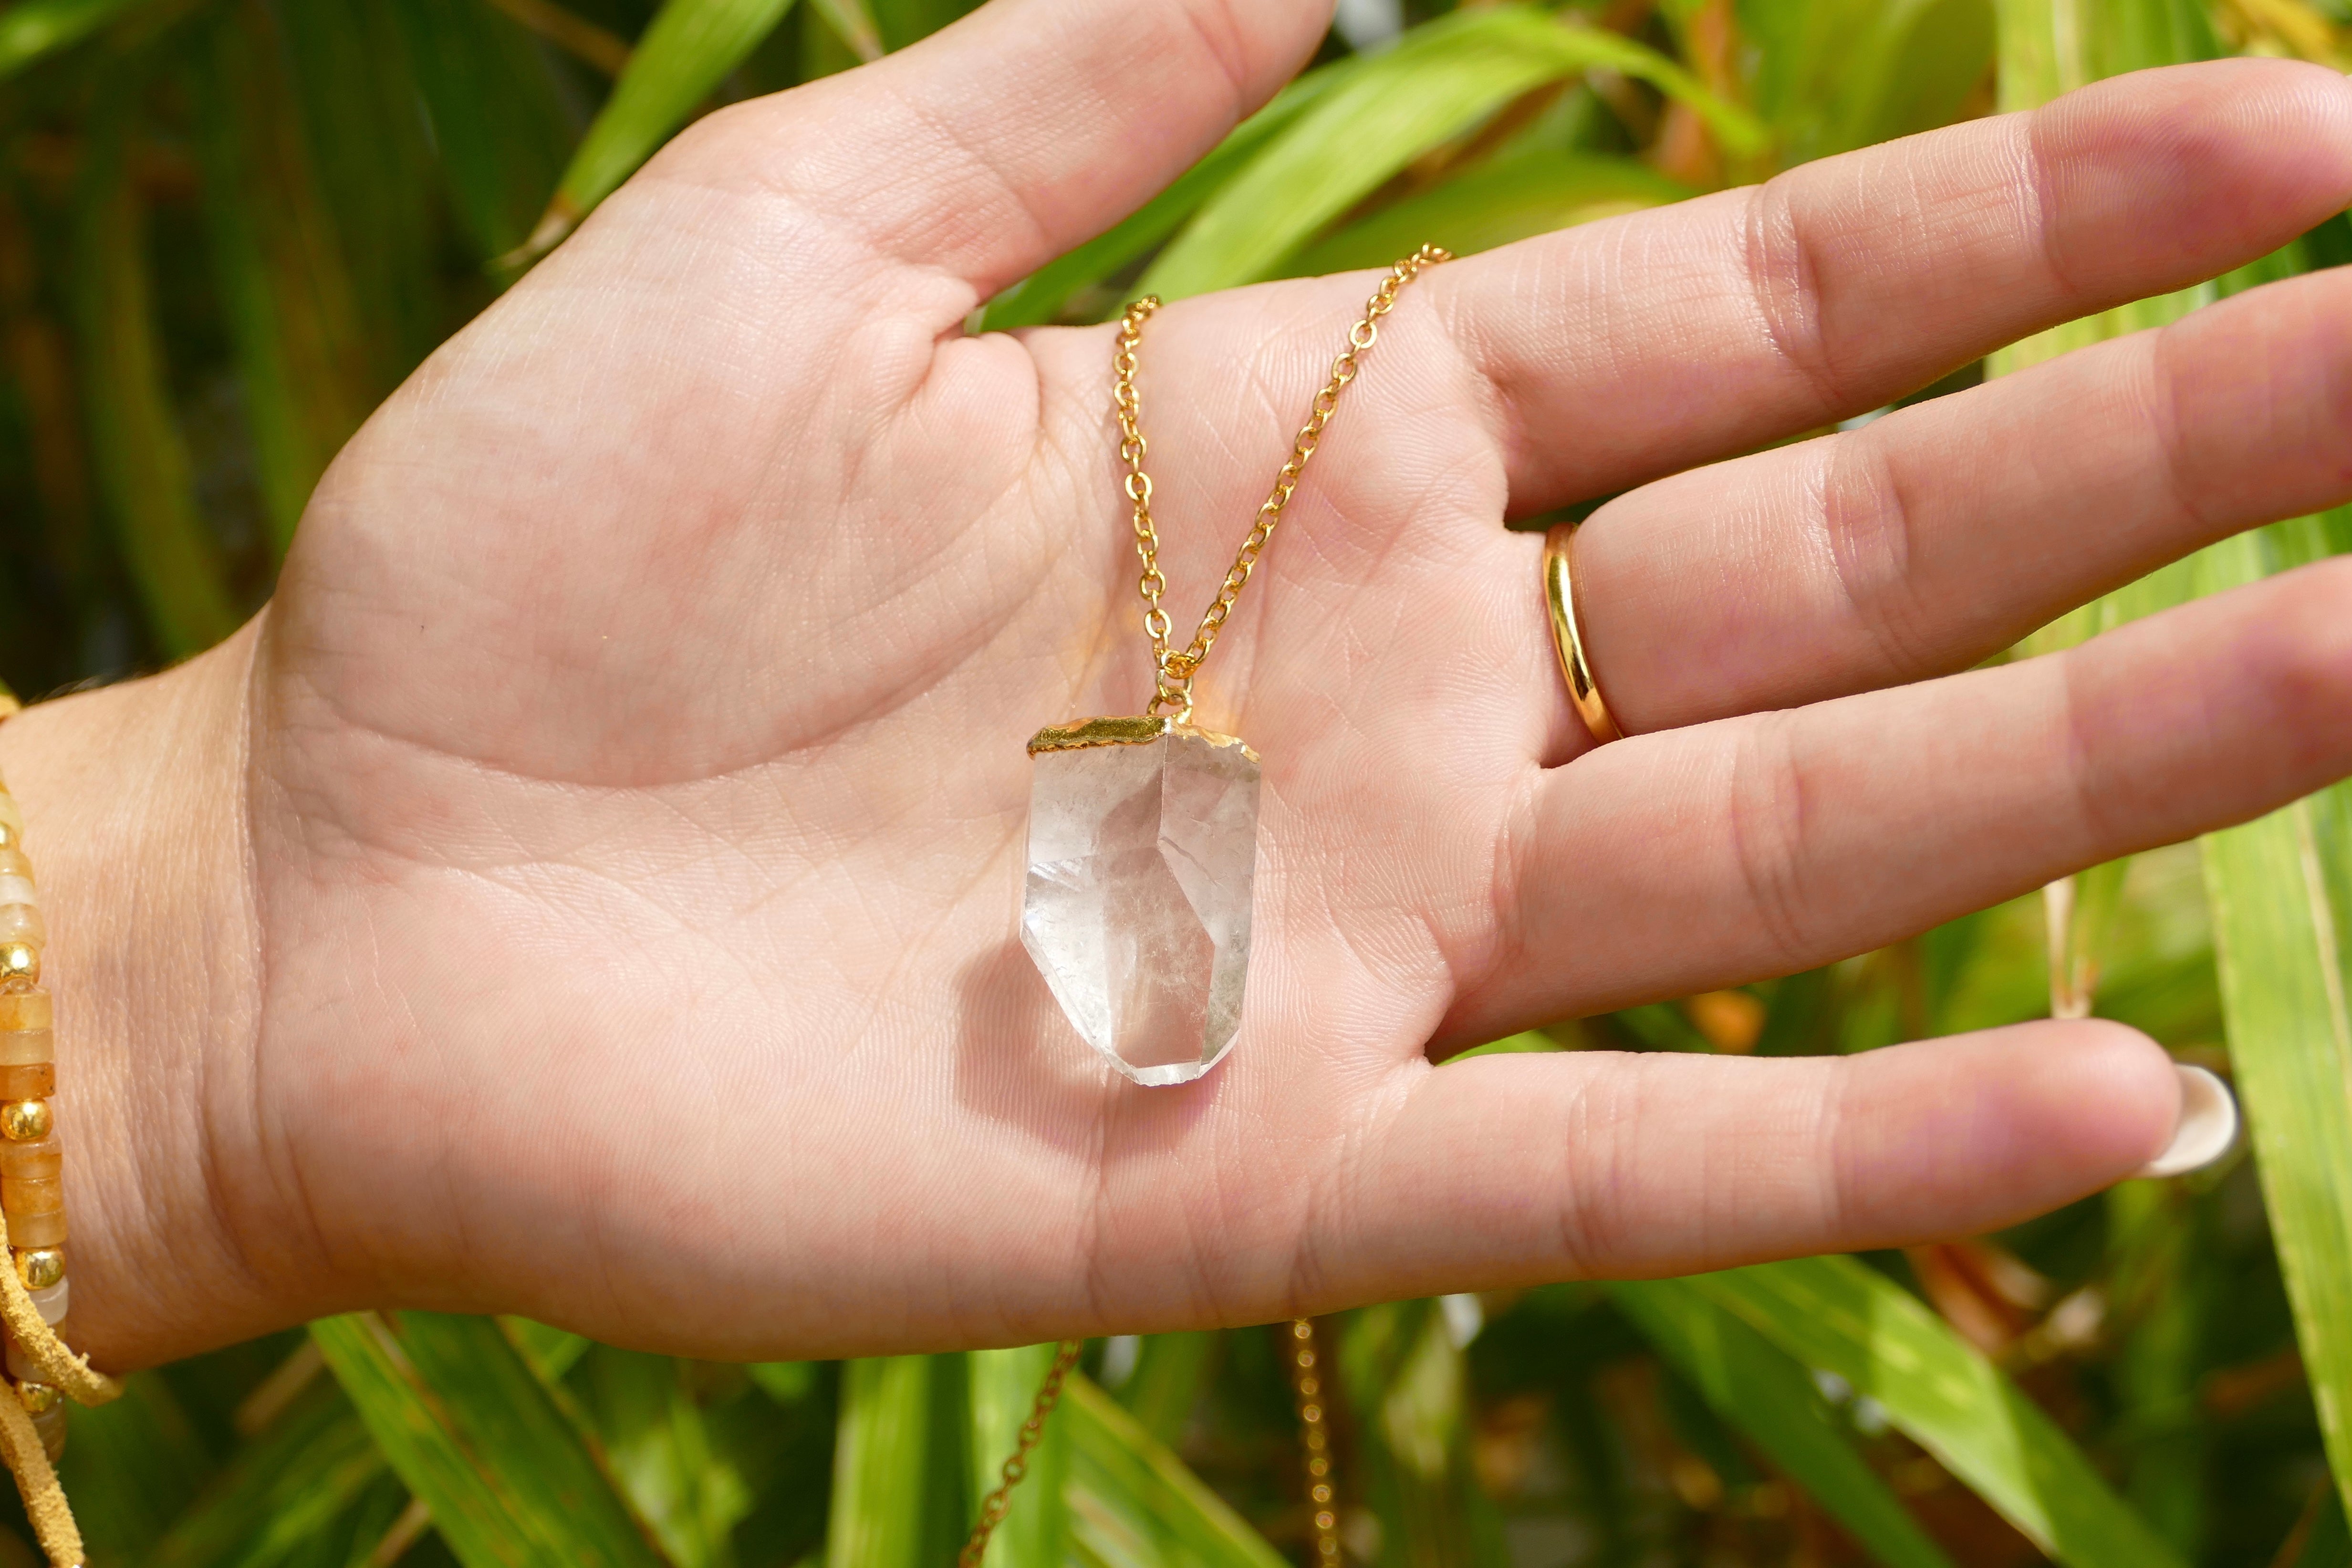 Large clear quartz necklace